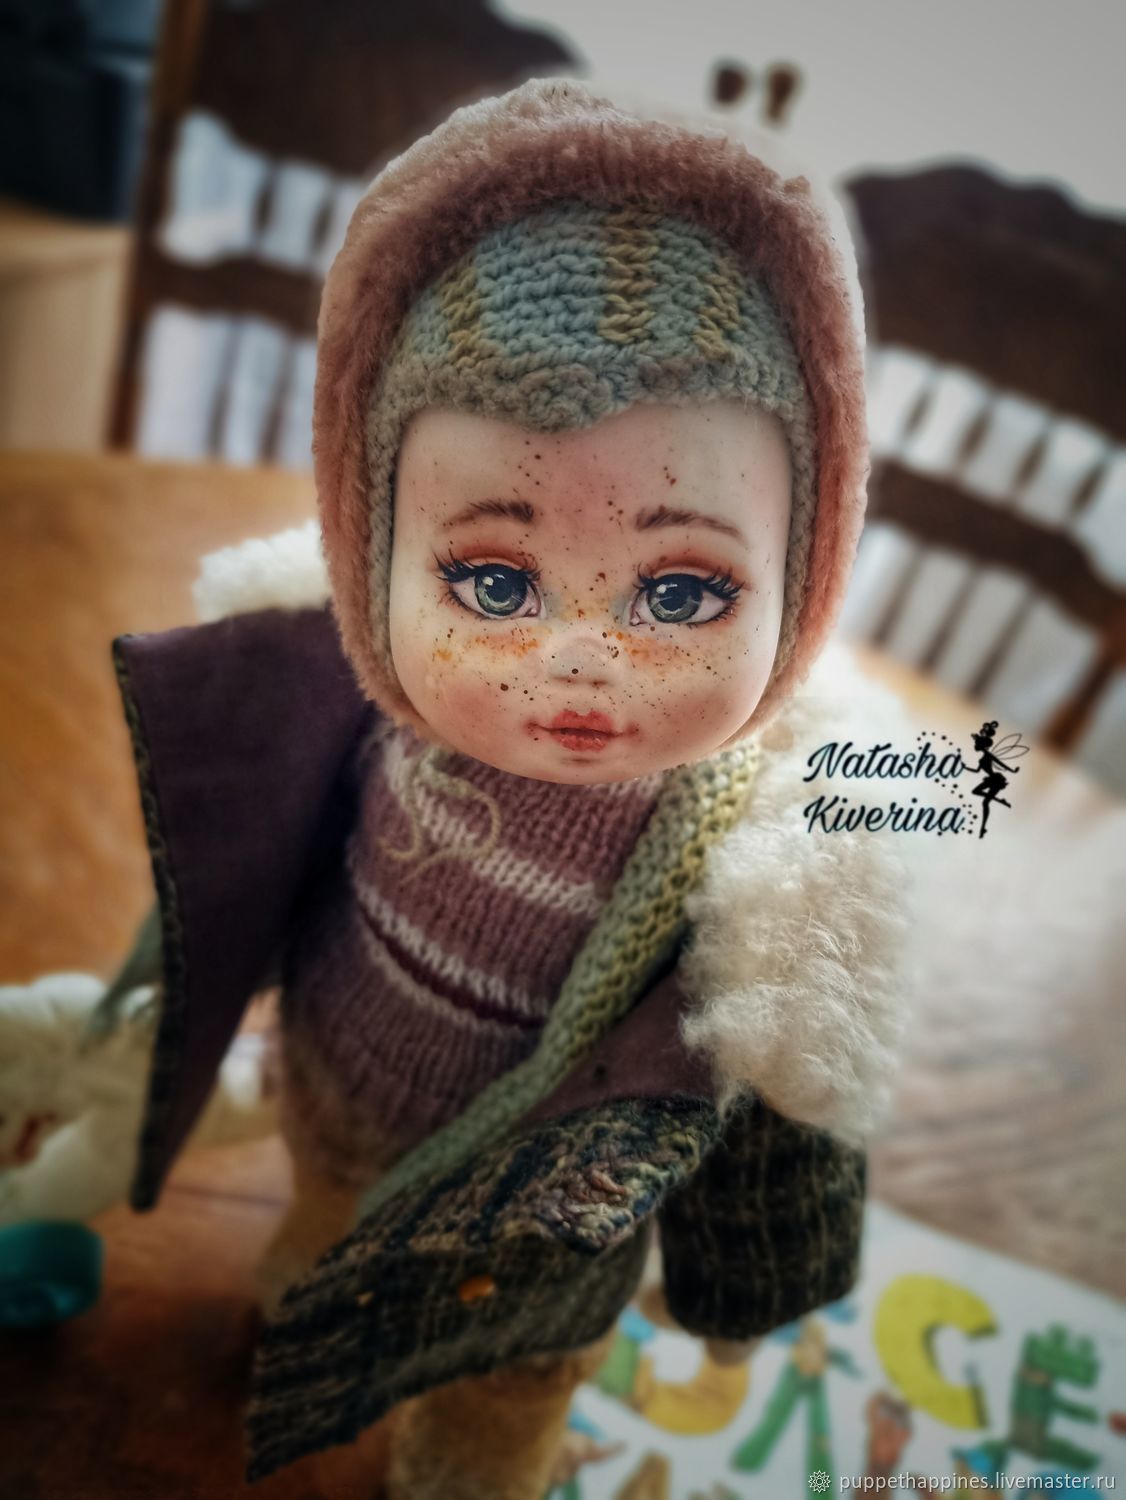 Купить модельную куклу по низкой цене в Екатеринбурге | Интернет-магазин Rich Family